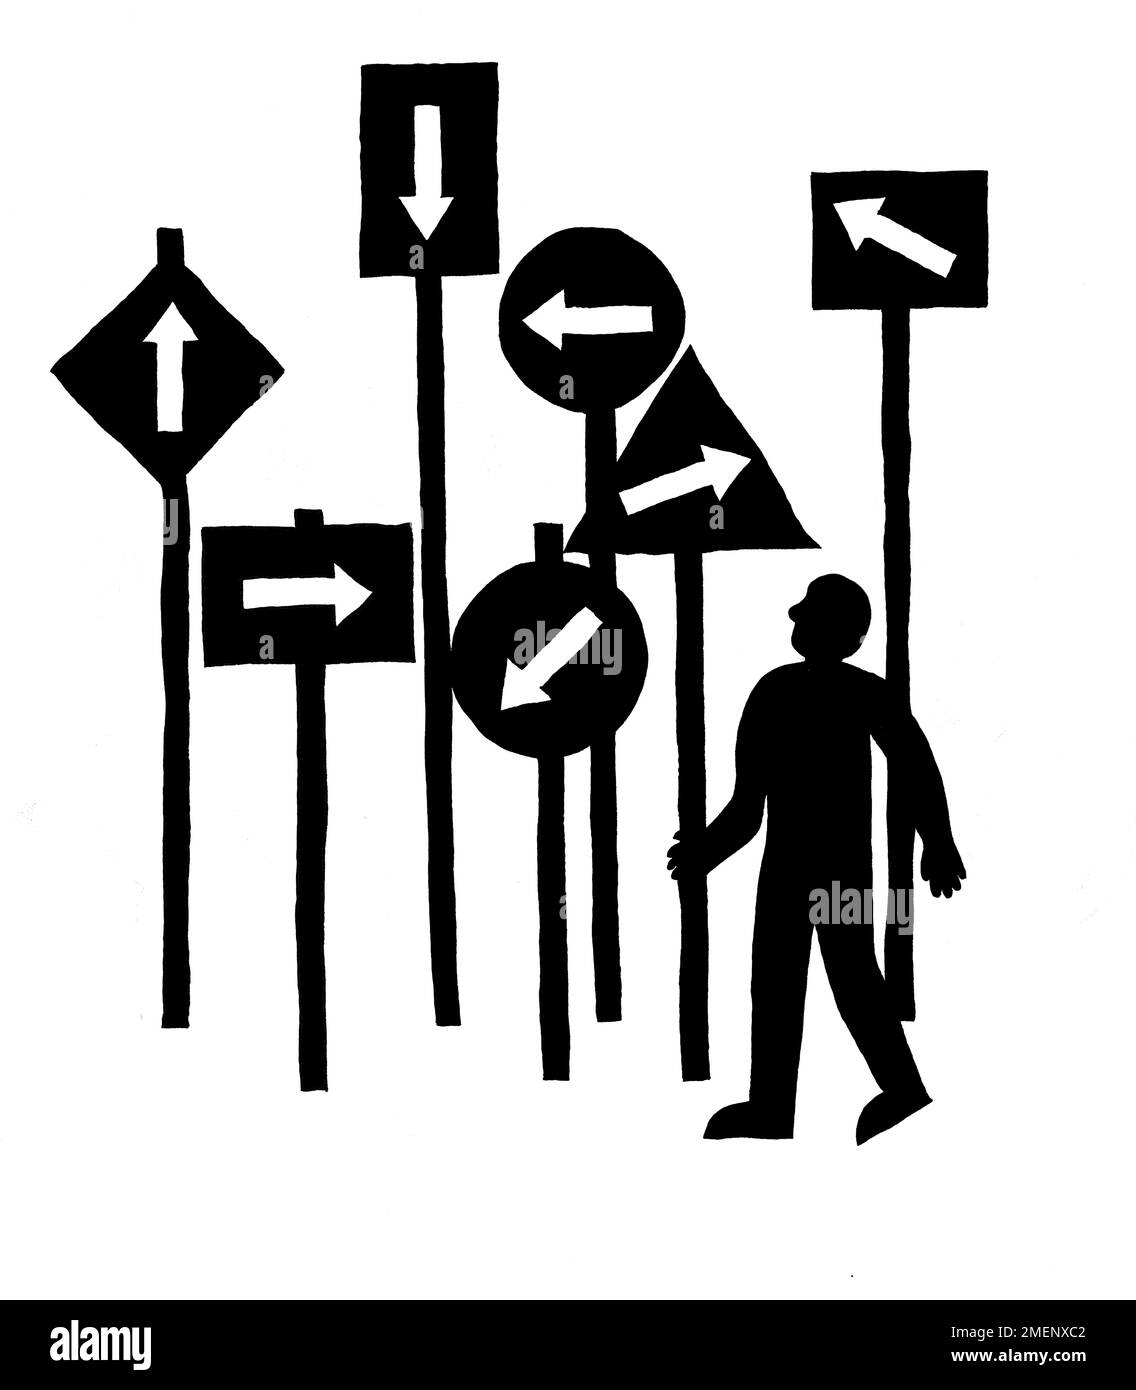 Schwarz-Weiß-Darstellung einer Person, die auf Schilder hinaufschaut, die alle in verschiedene Richtungen zeigen Stockfoto